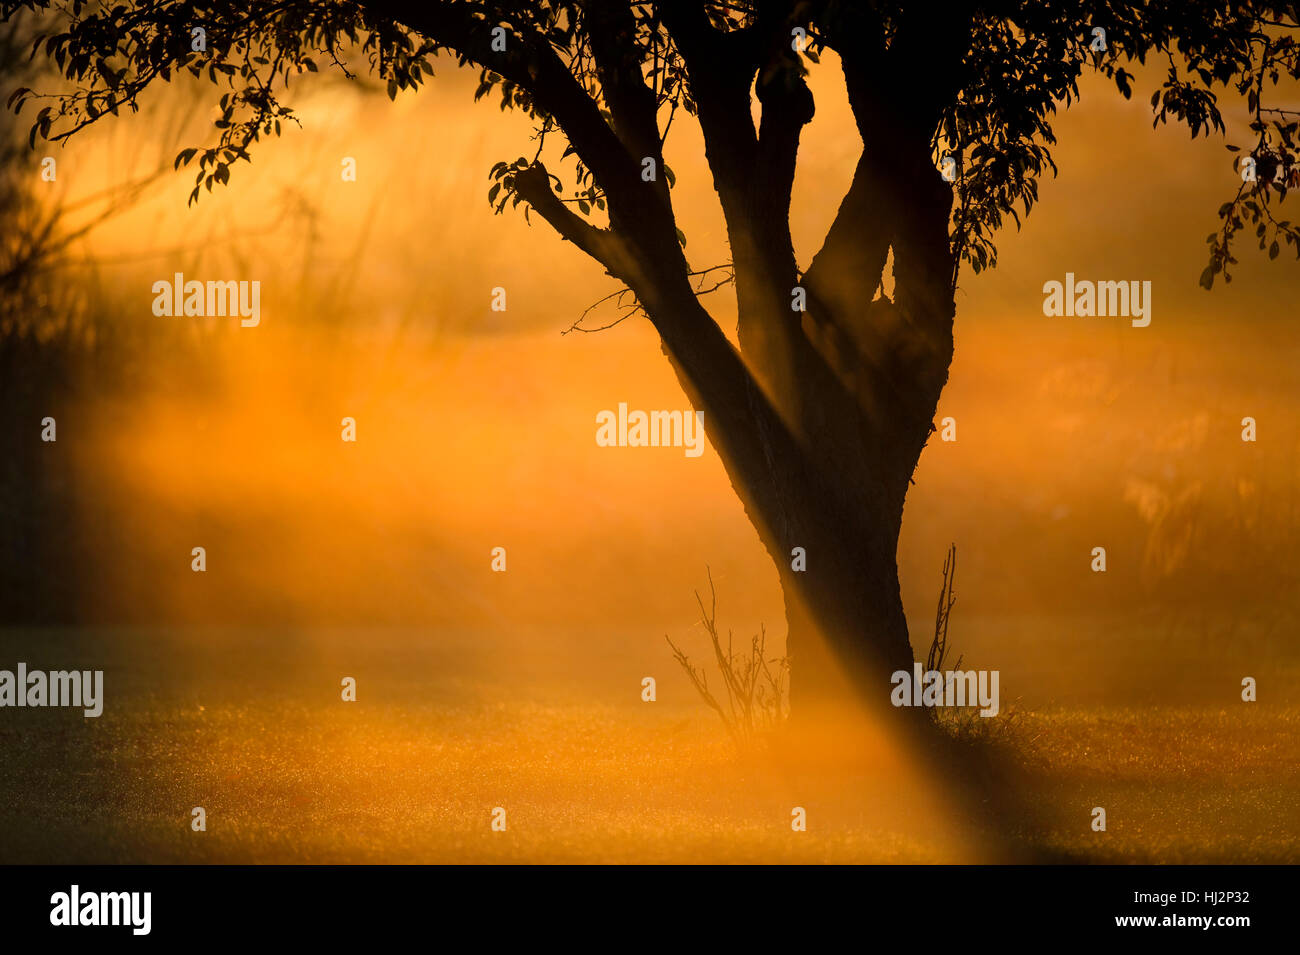 Un arbre se dresse dans un champ ouvert comme le soleil fait le matin le brouillard glow orange vif autour de l'arbre. Banque D'Images